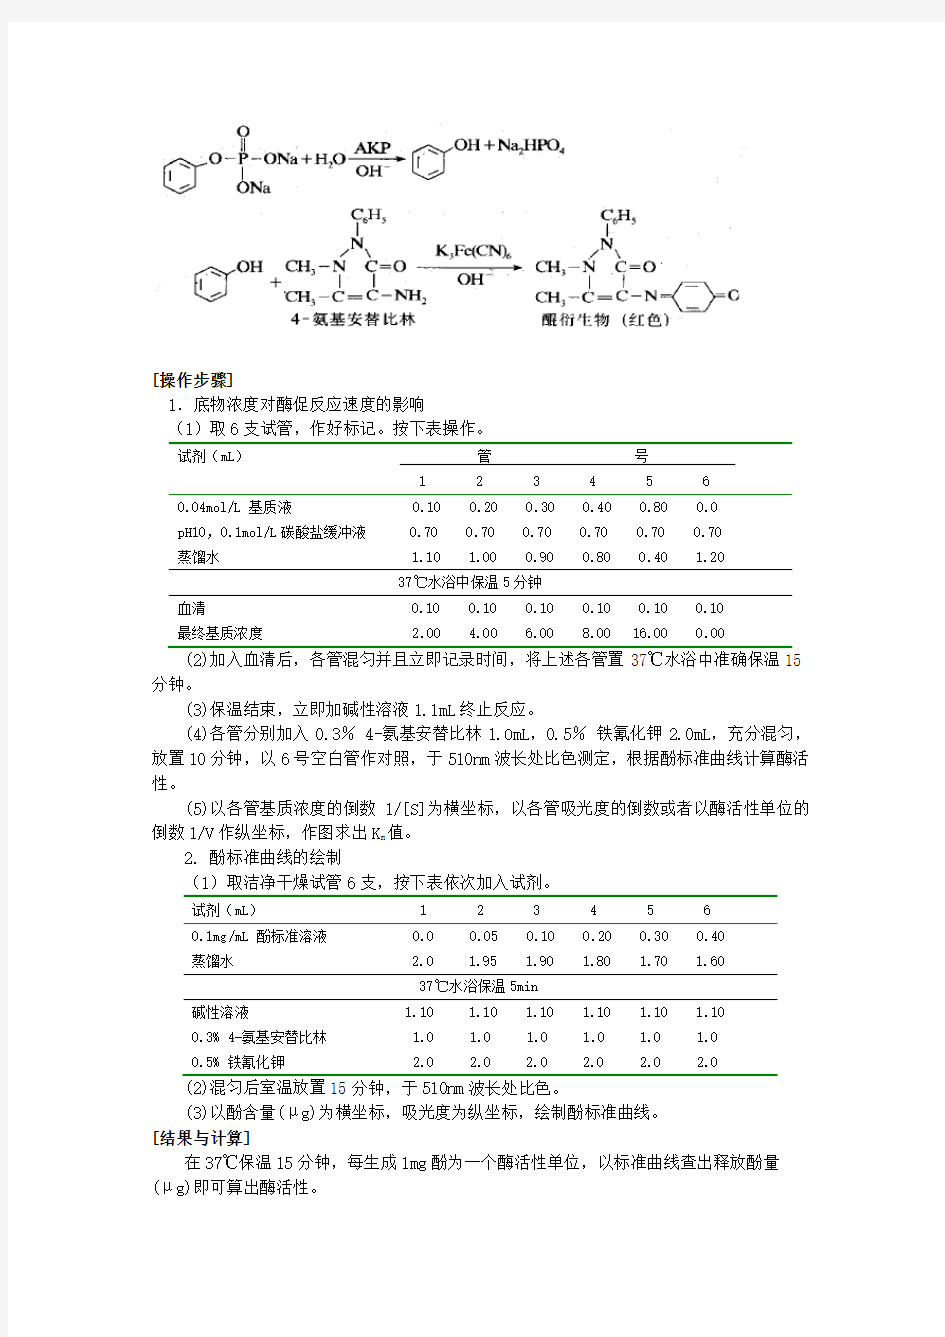 碱性磷酸酶米氏常数的测定